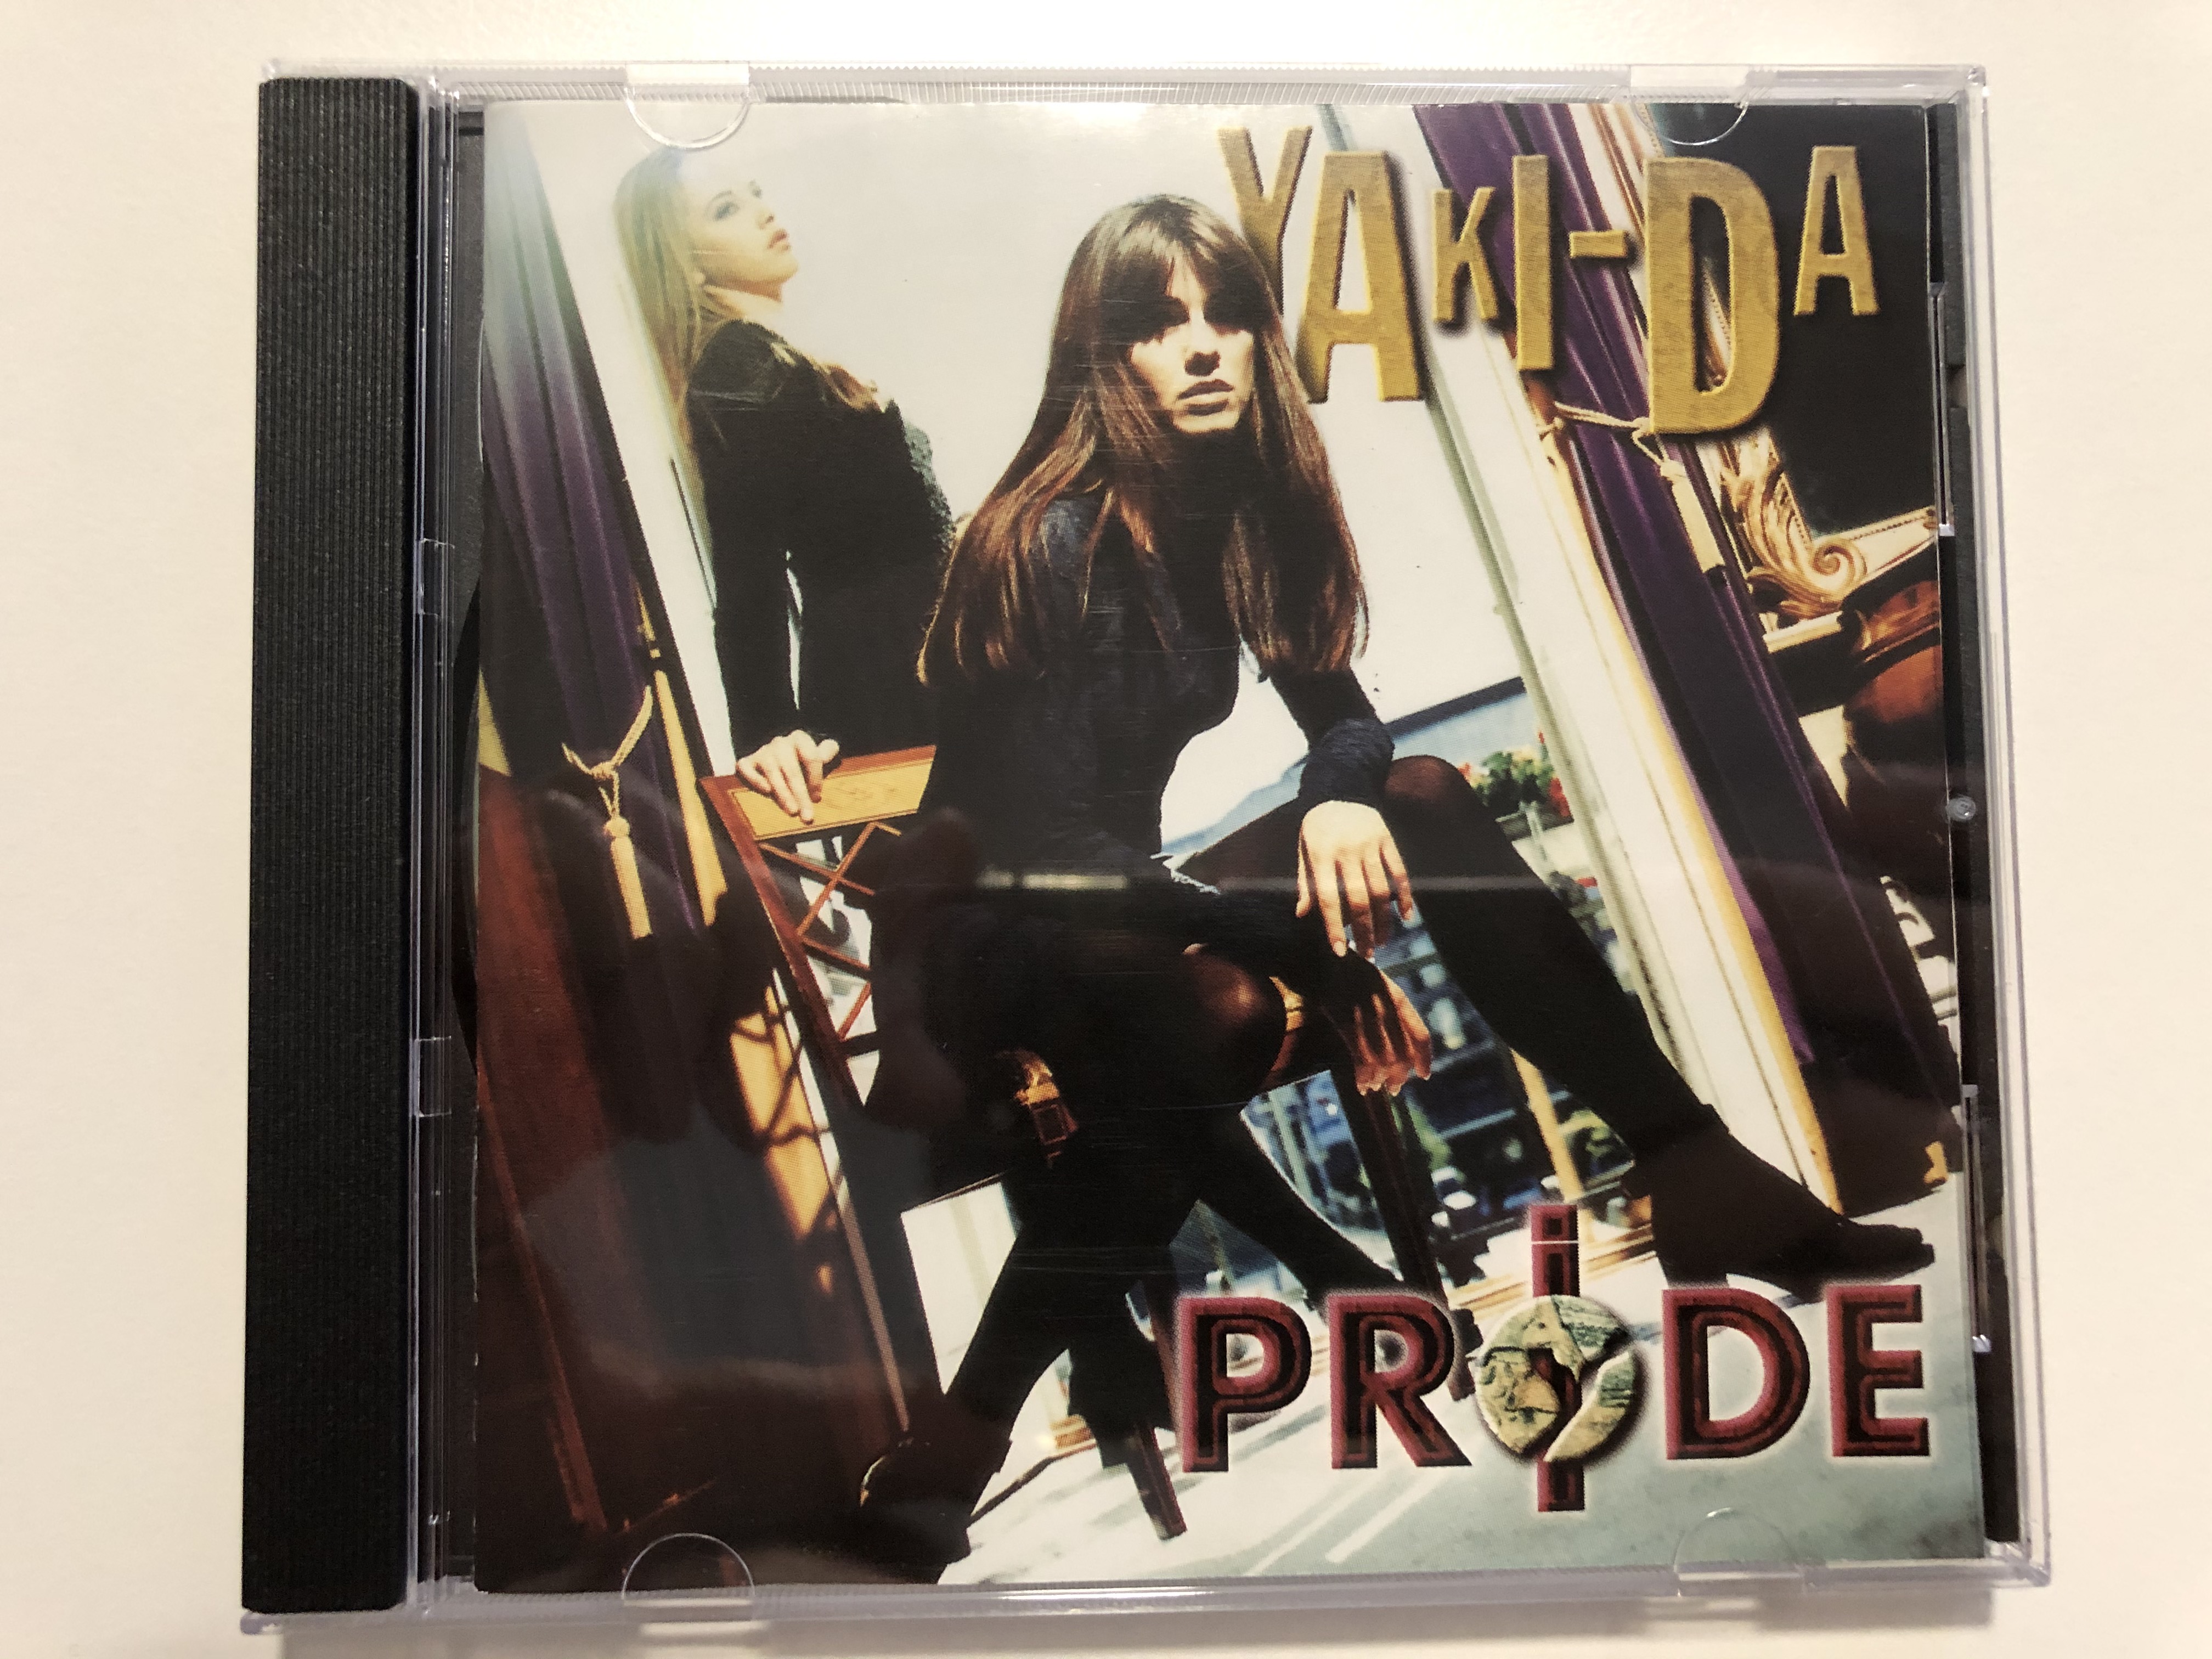 yaki-da-pride-london-records-audio-cd-1995-527-163-2-1-.jpg